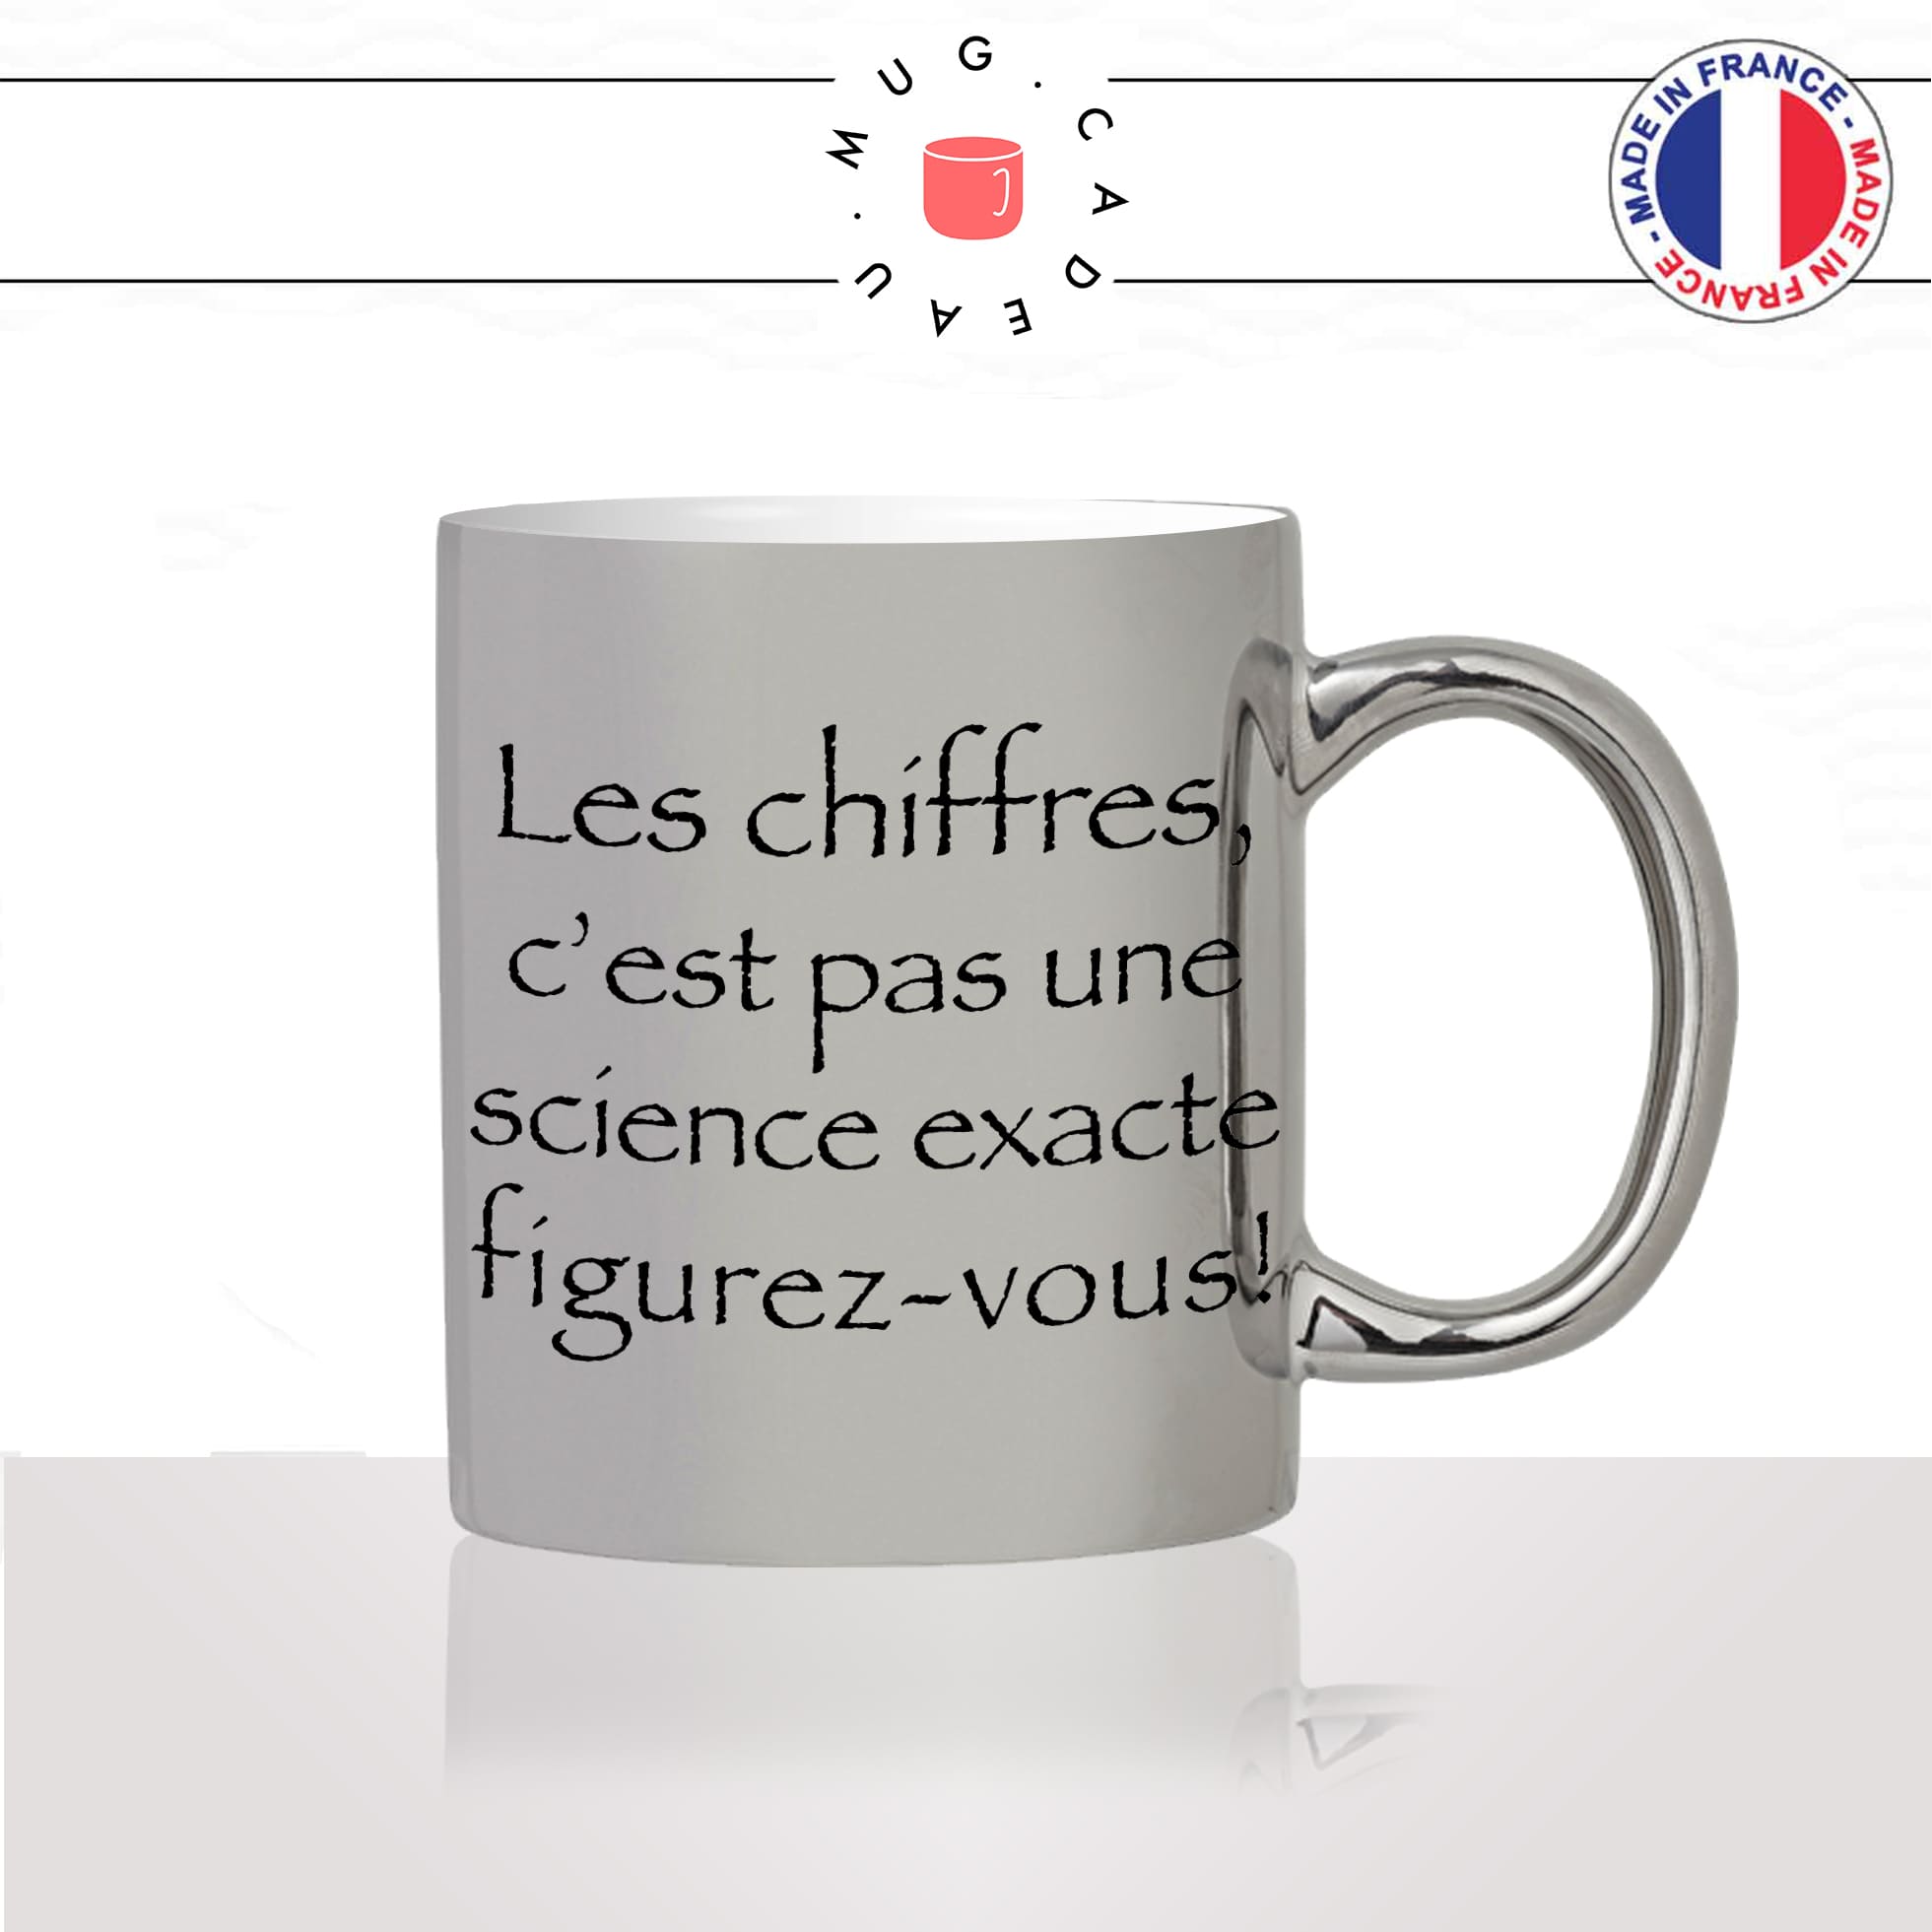 mug-tasse-argent-argenté-silver-série-francaise-culte-kaamelott-arthur-chiffres-science-exacte-caradoc-humour-idée-cadeau-fun-cool-café-thé2